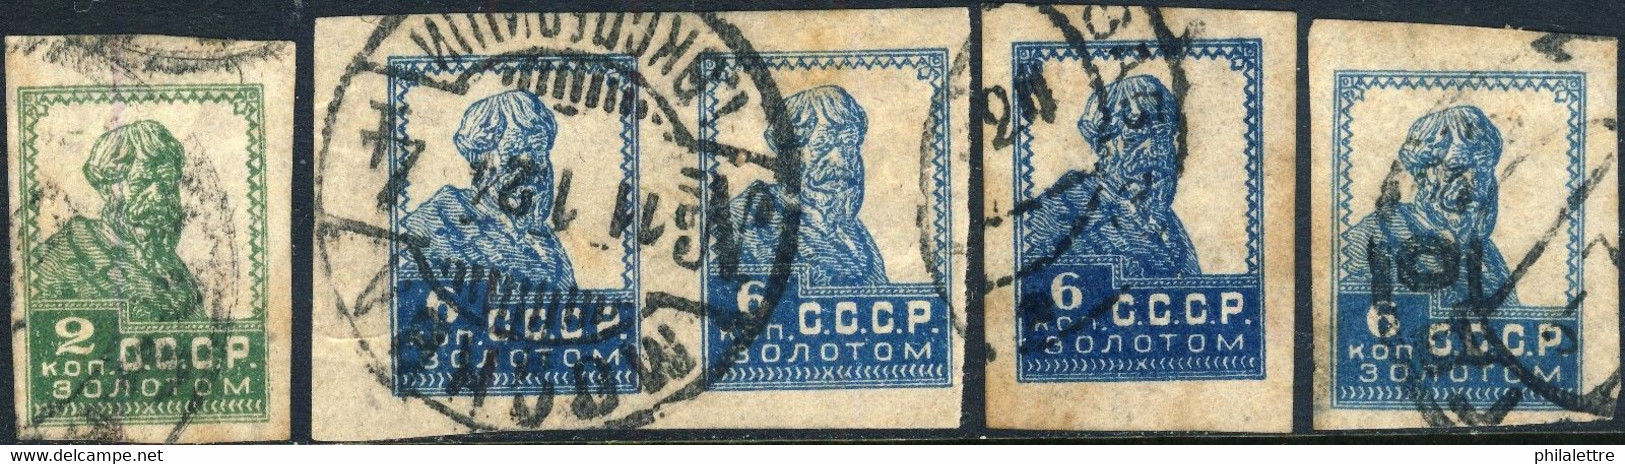 URSS / USSR - Soviet Union - 1923/4 - Mi.229.1 & 4xMi.233.I Imperf / No Wmk - VFU - Usati